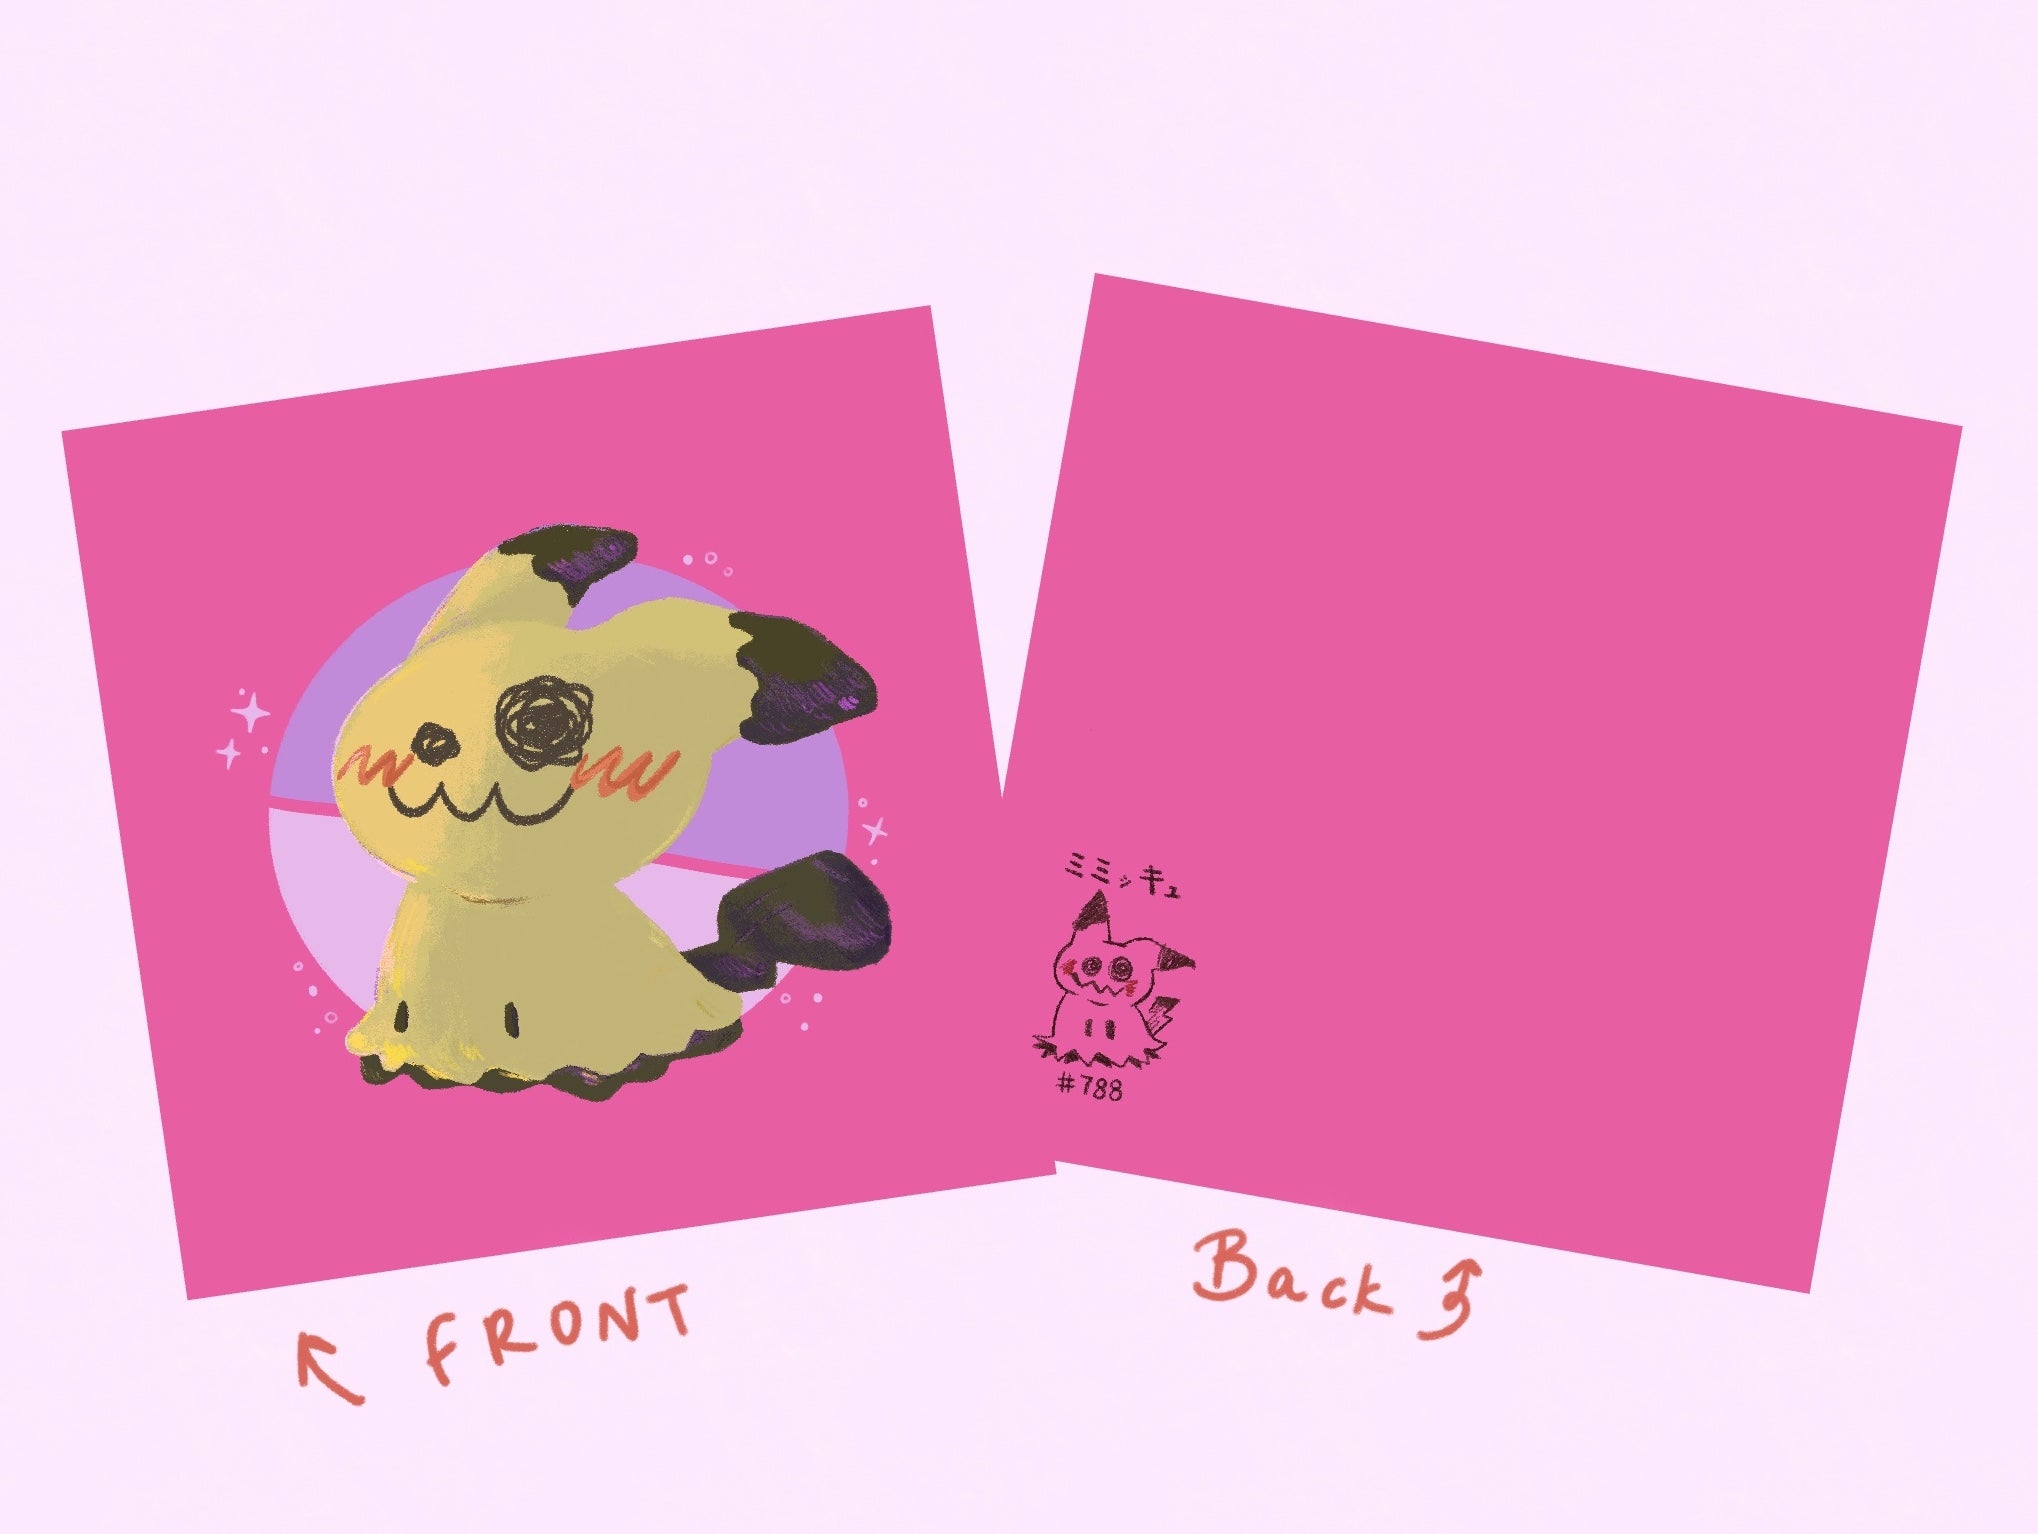 [ATHENA] 4.72" x 4.72" print -Mimikyu: The disguise Pokemon print